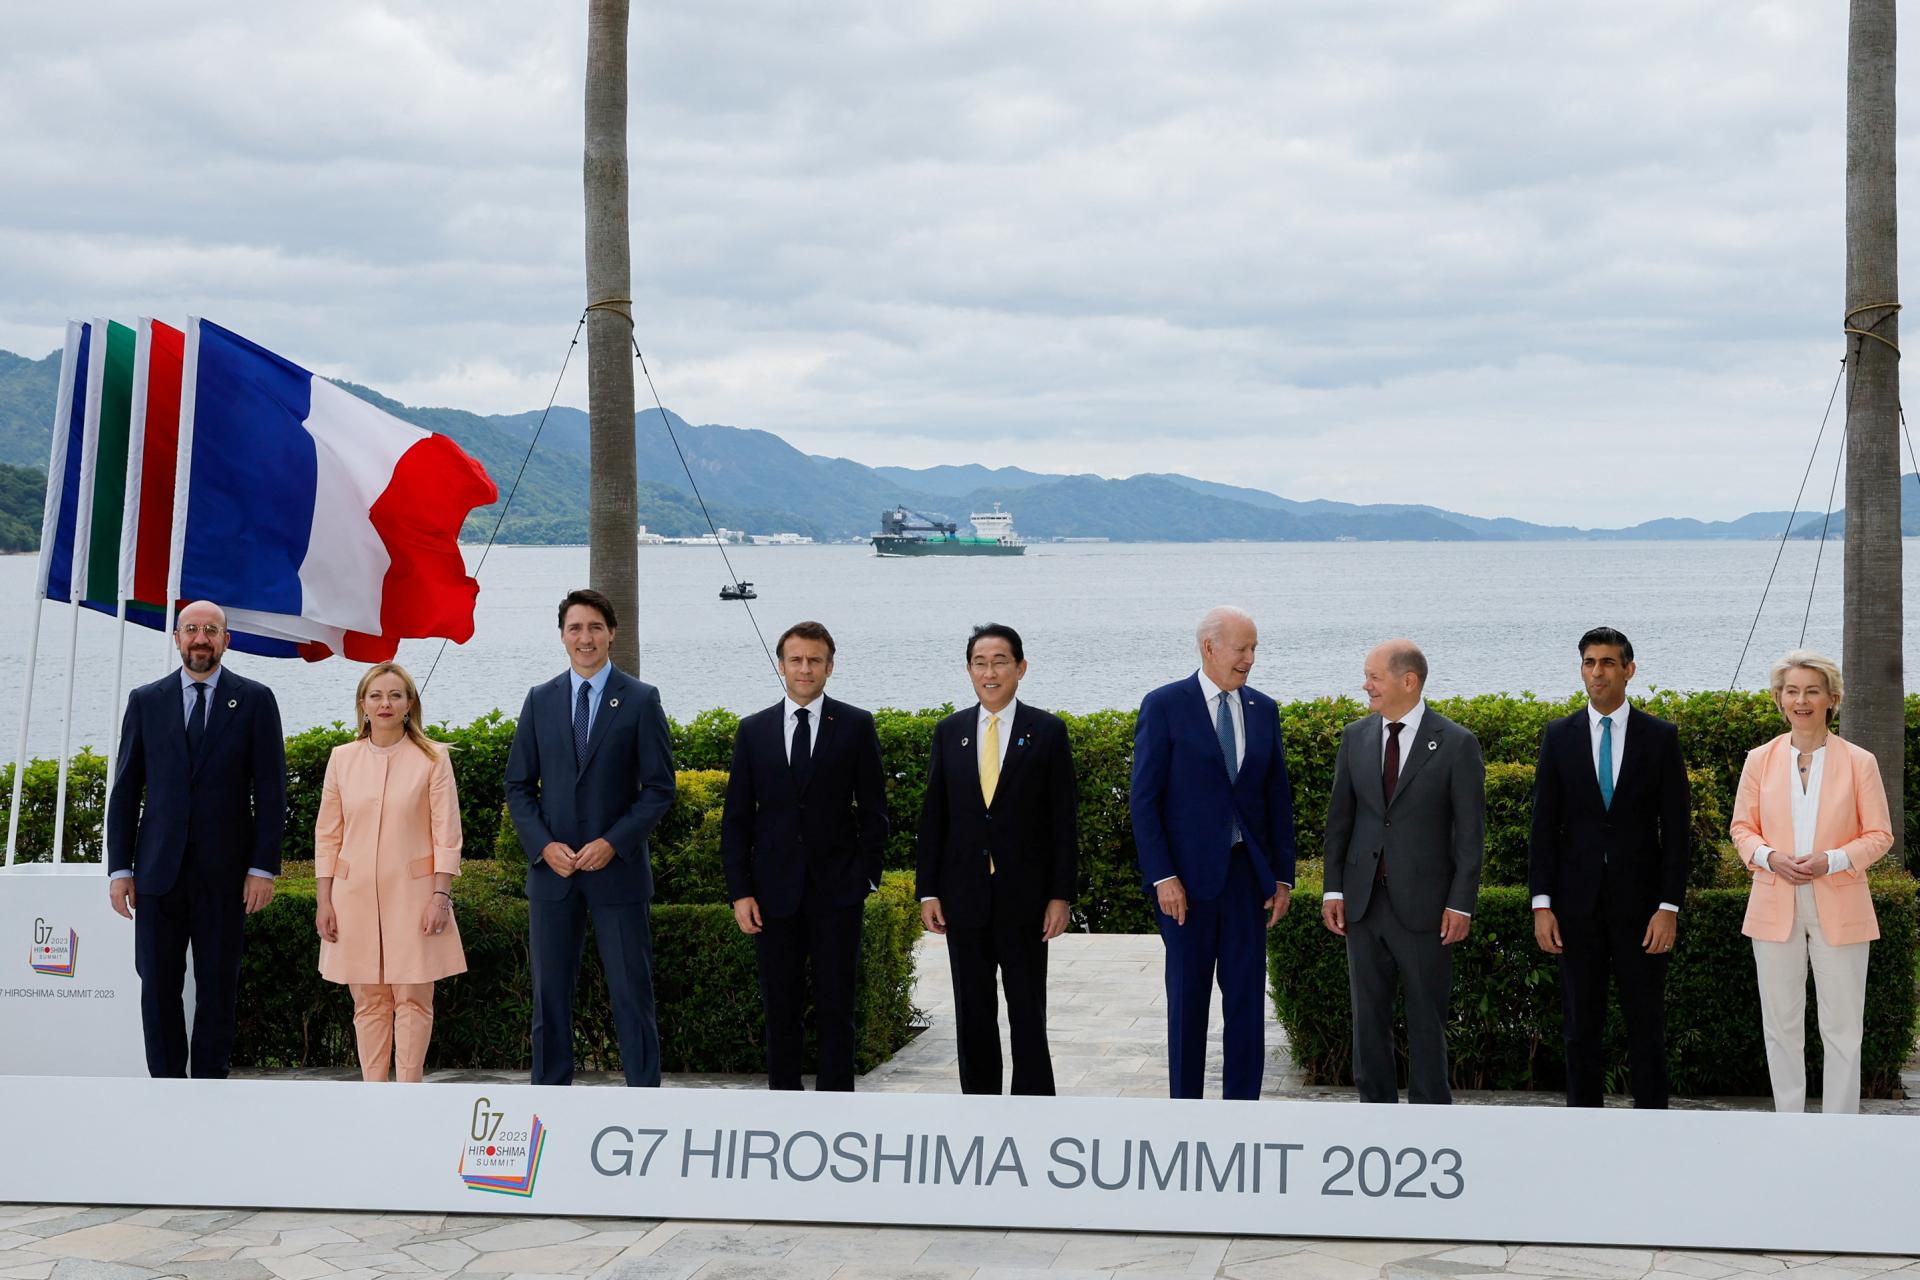 Meloniová a Macron absolvovali stretnutie počas summitu G7 v Hirošime, vzťahy medzi krajinami sú napäté